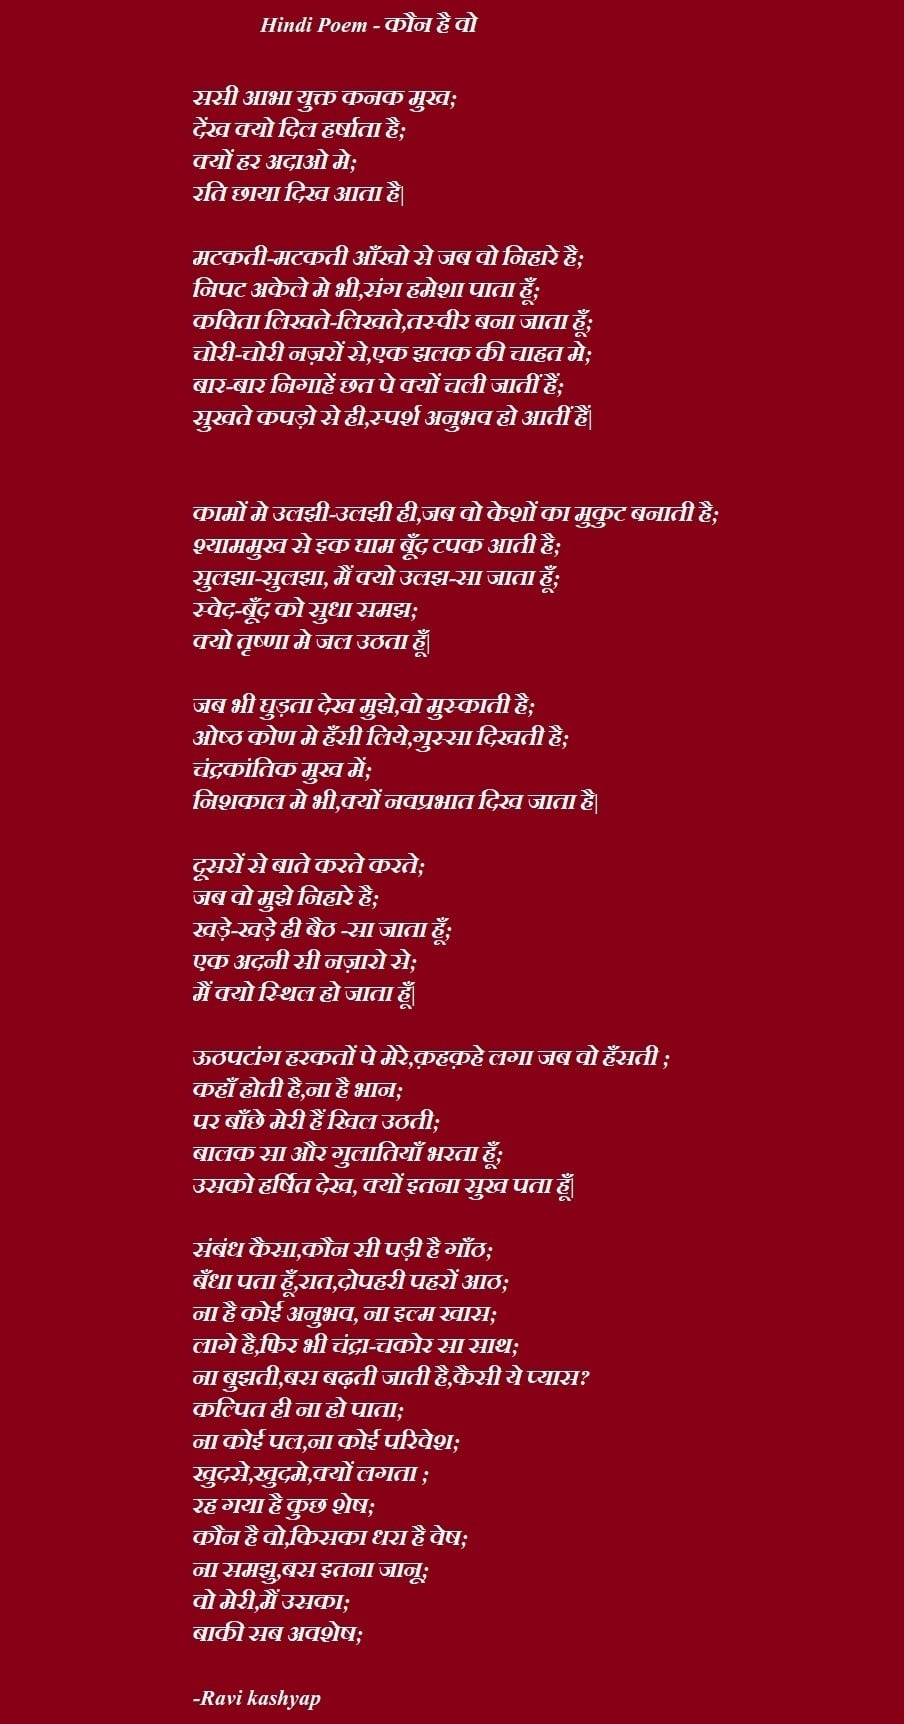 Hindi Poem - कौन है वो